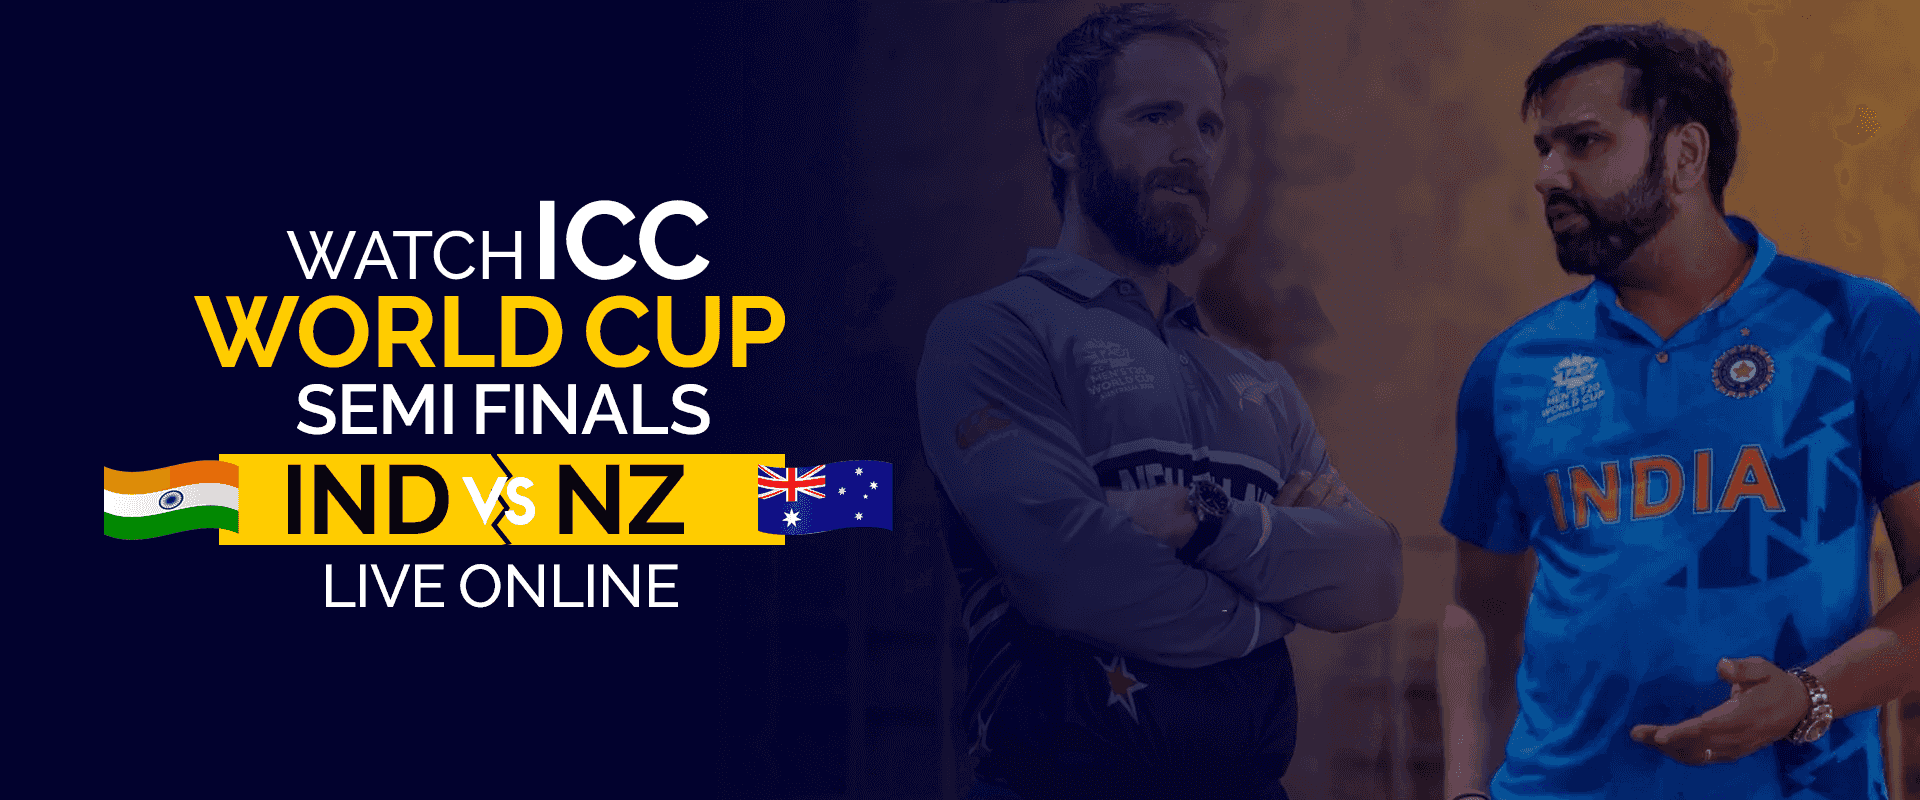 Kuckt ICC Weltmeeschterschaft Semi-Finals IND vs NZ Live Online